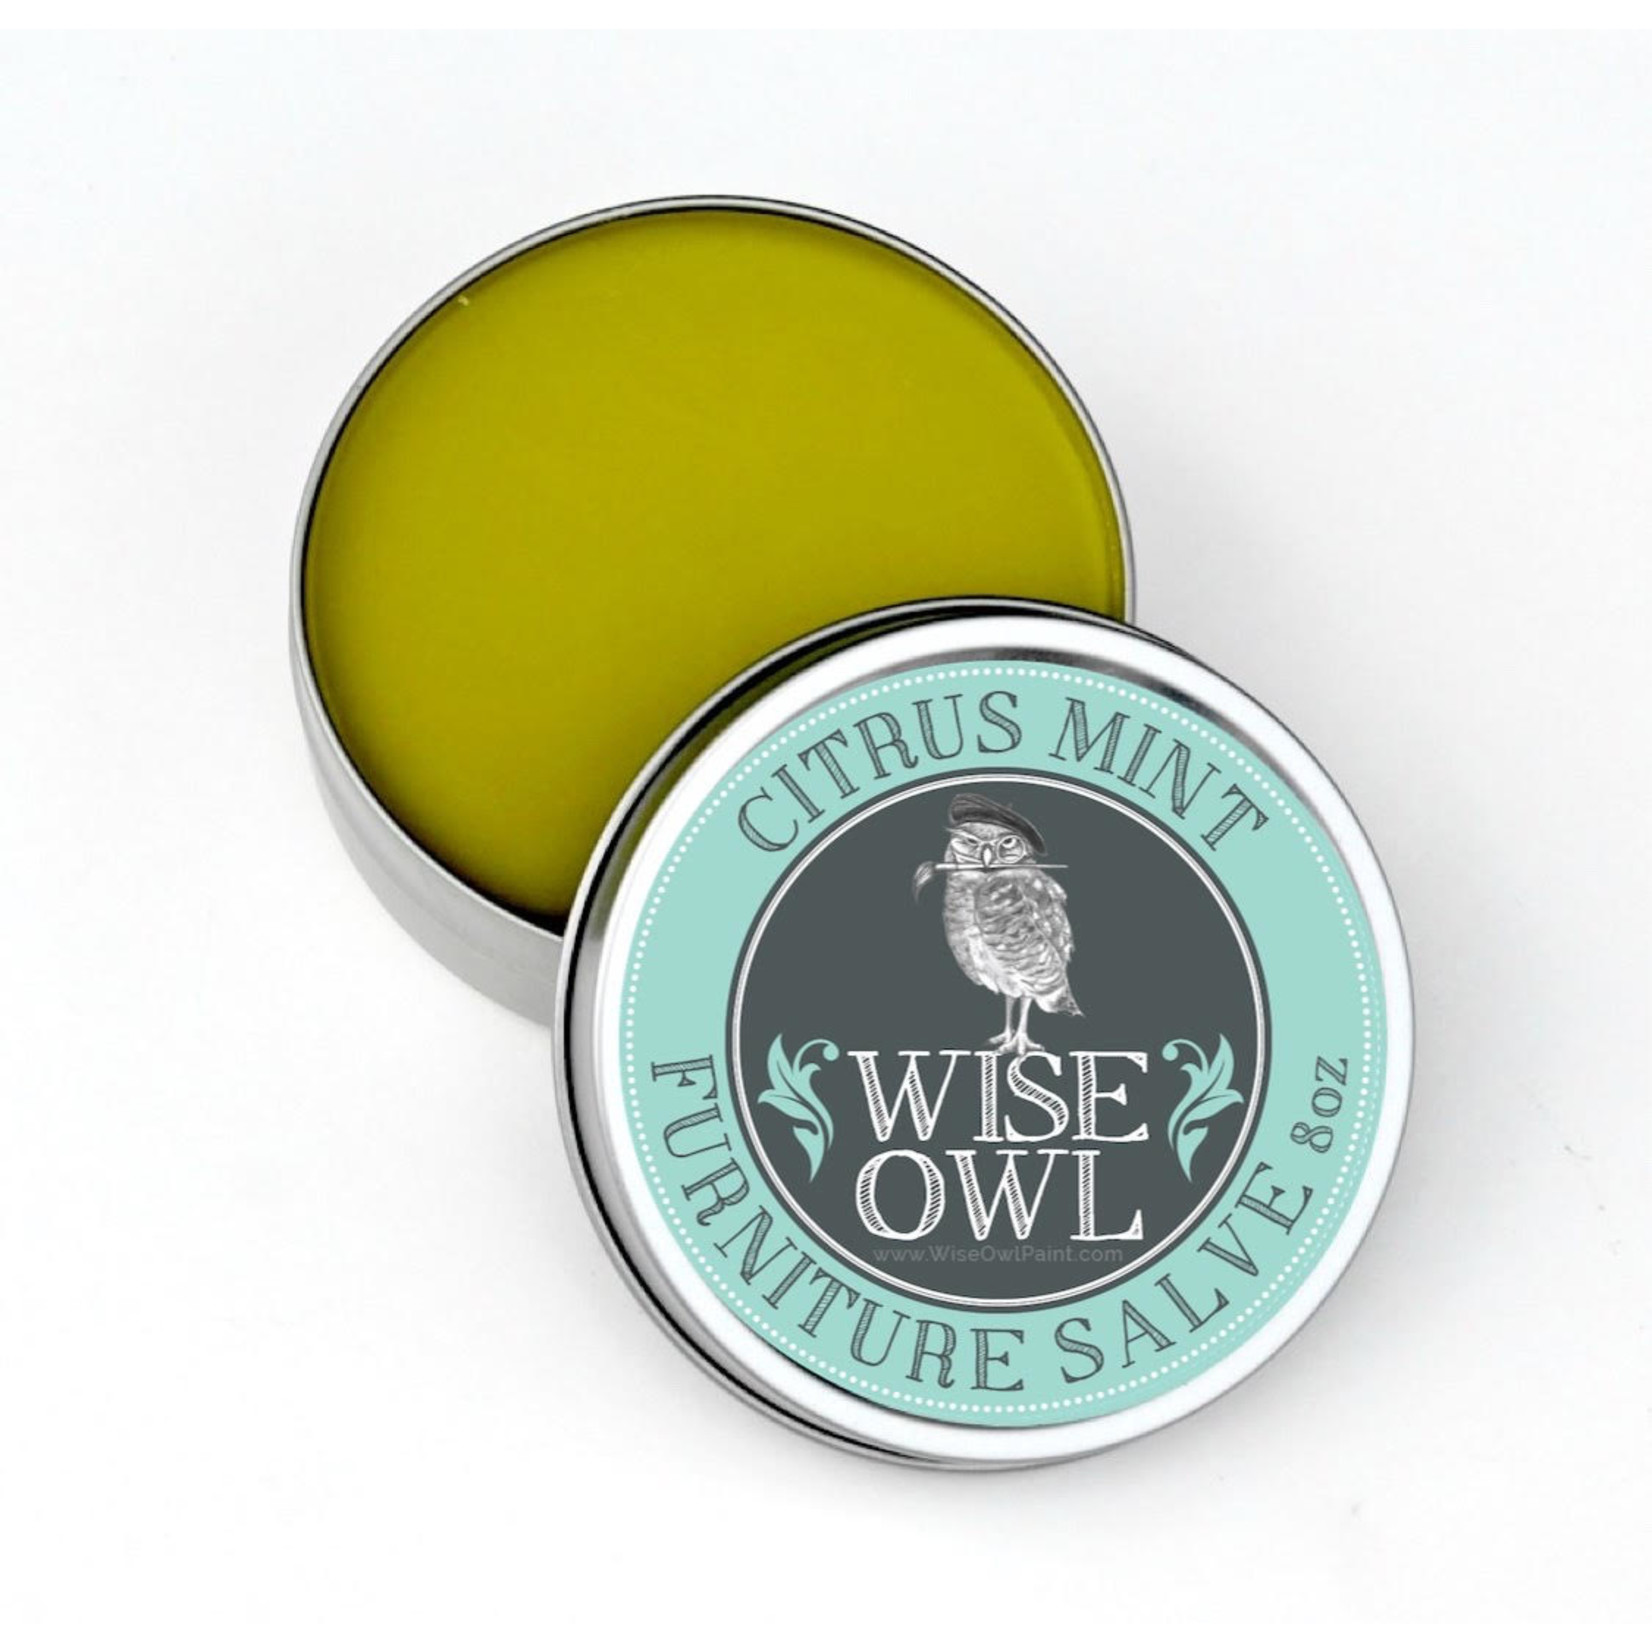 Wise Owl 8 oz Citrus Mint Furniture Salve